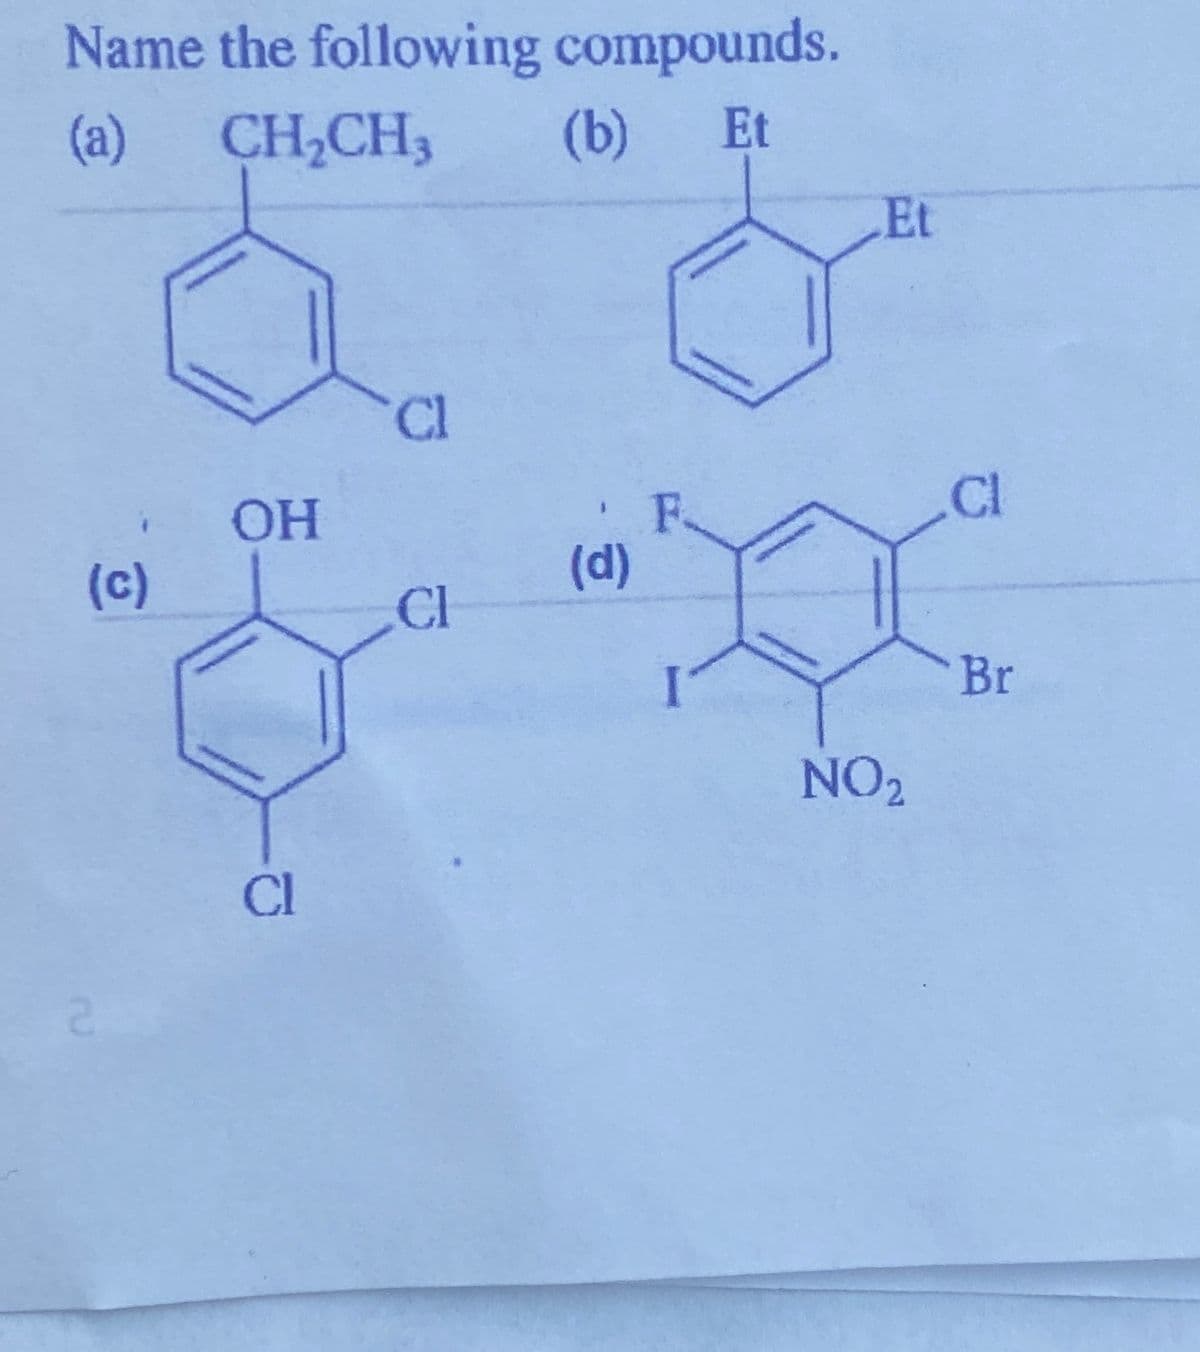 Name the following compounds.
(a)
CH,CH3
(b)
Et
Et
Cl
CI
OH
(c)
(d)
CI
Br
NO2
Cl
2.
